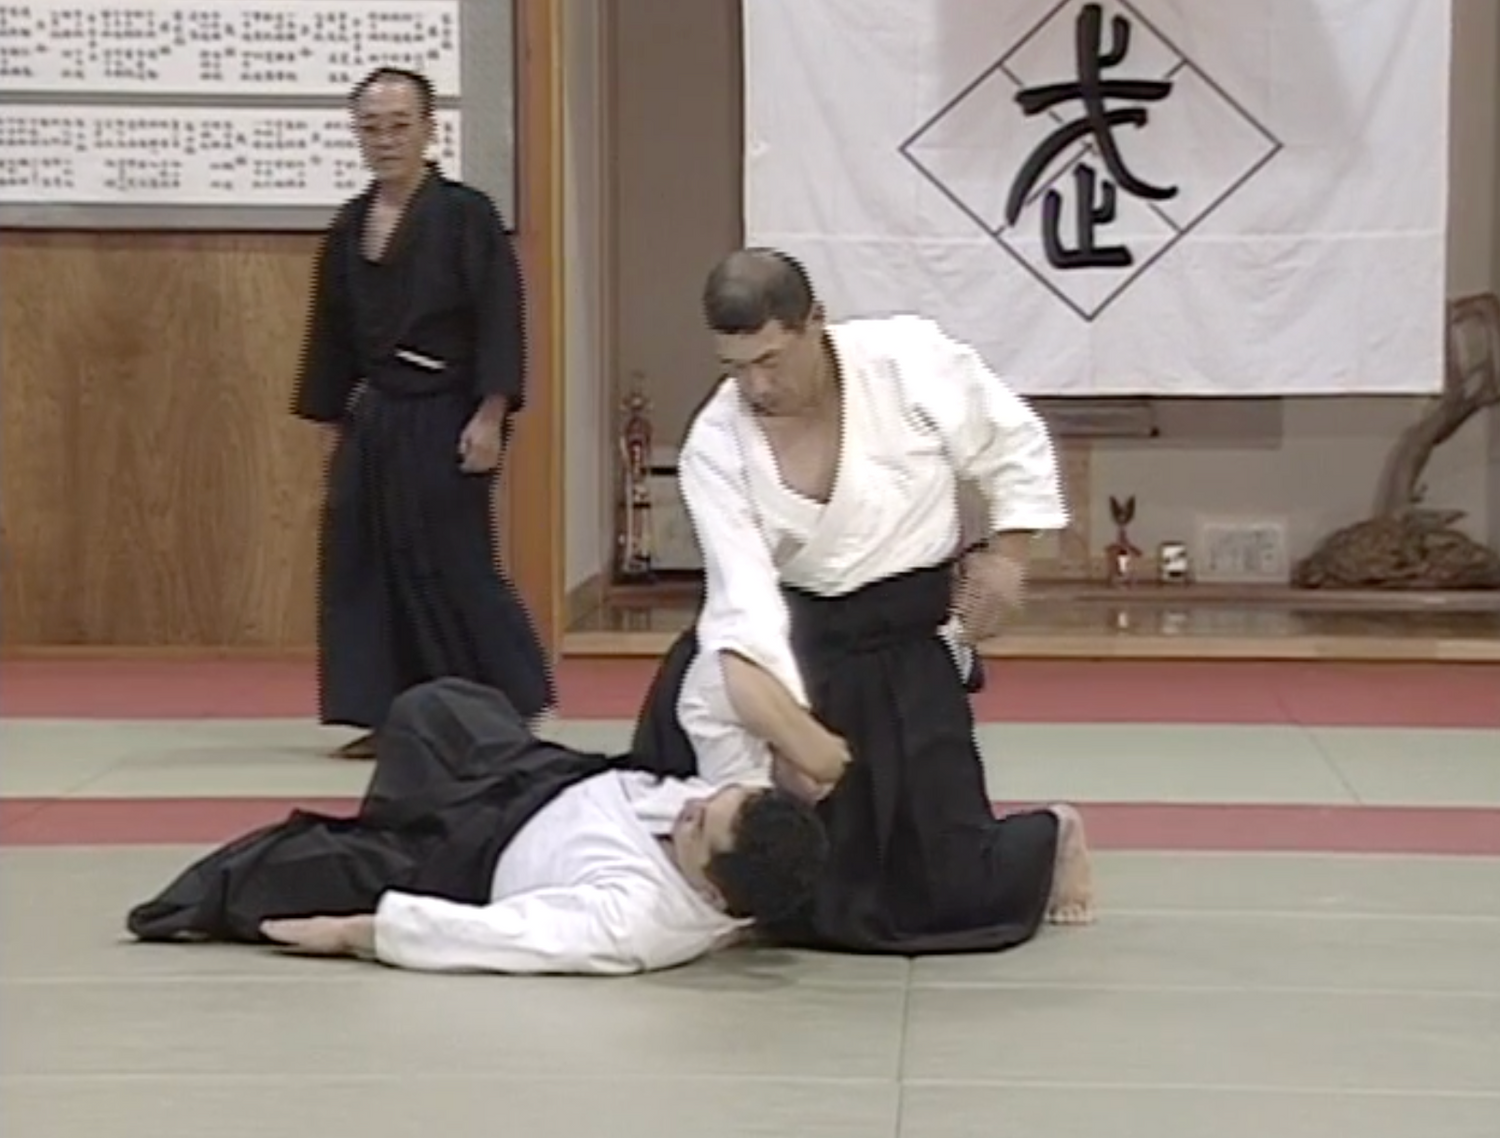 Daito Ryu Aikijujutsu: Ikkajo Ura Techniques DVD 2